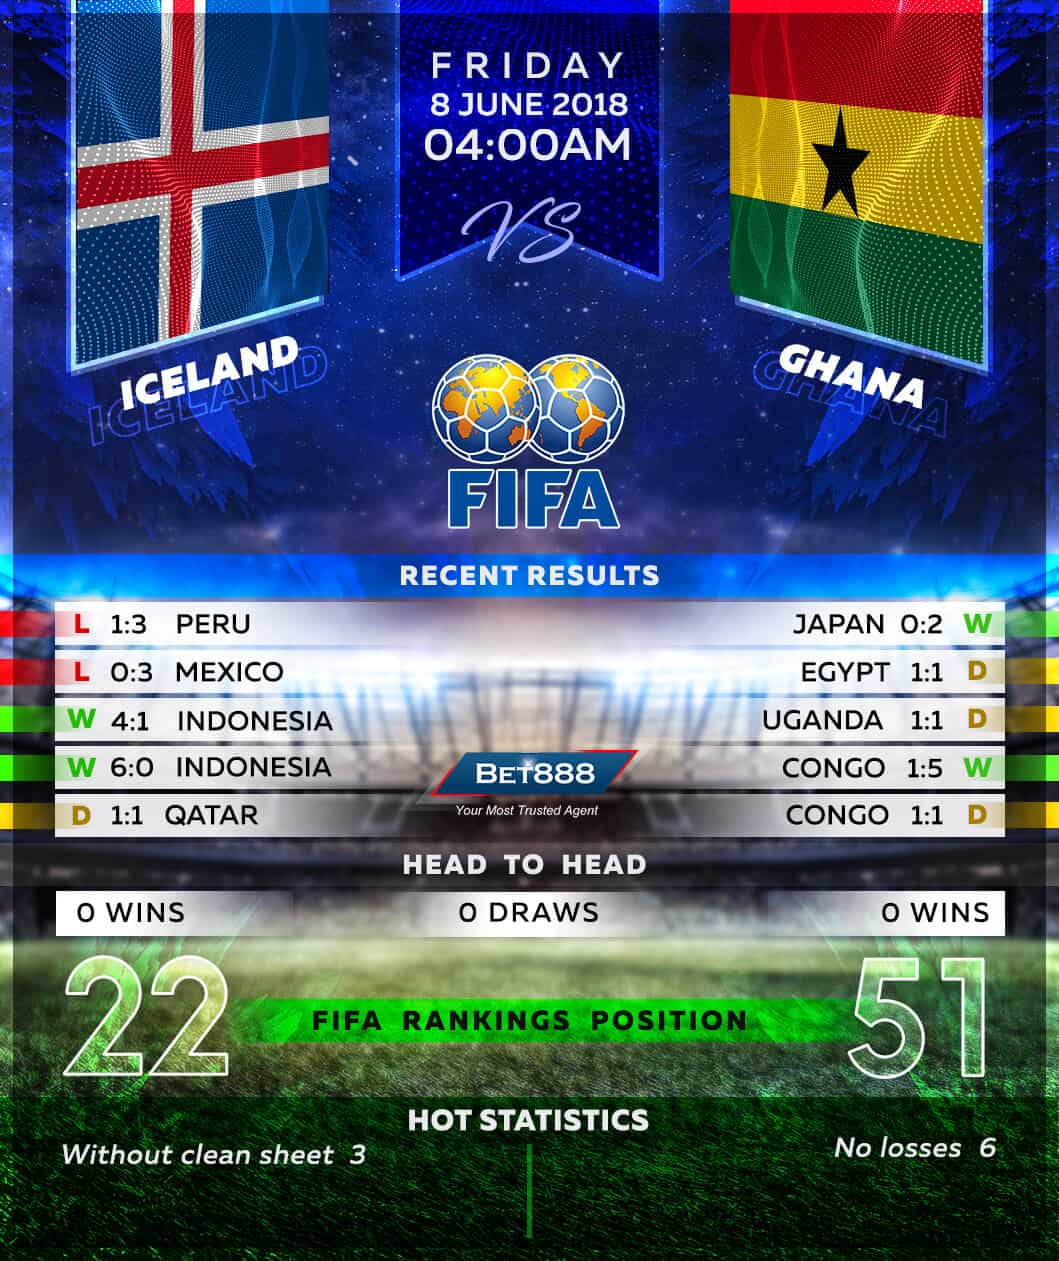 Iceland vs Ghana 08/06/18